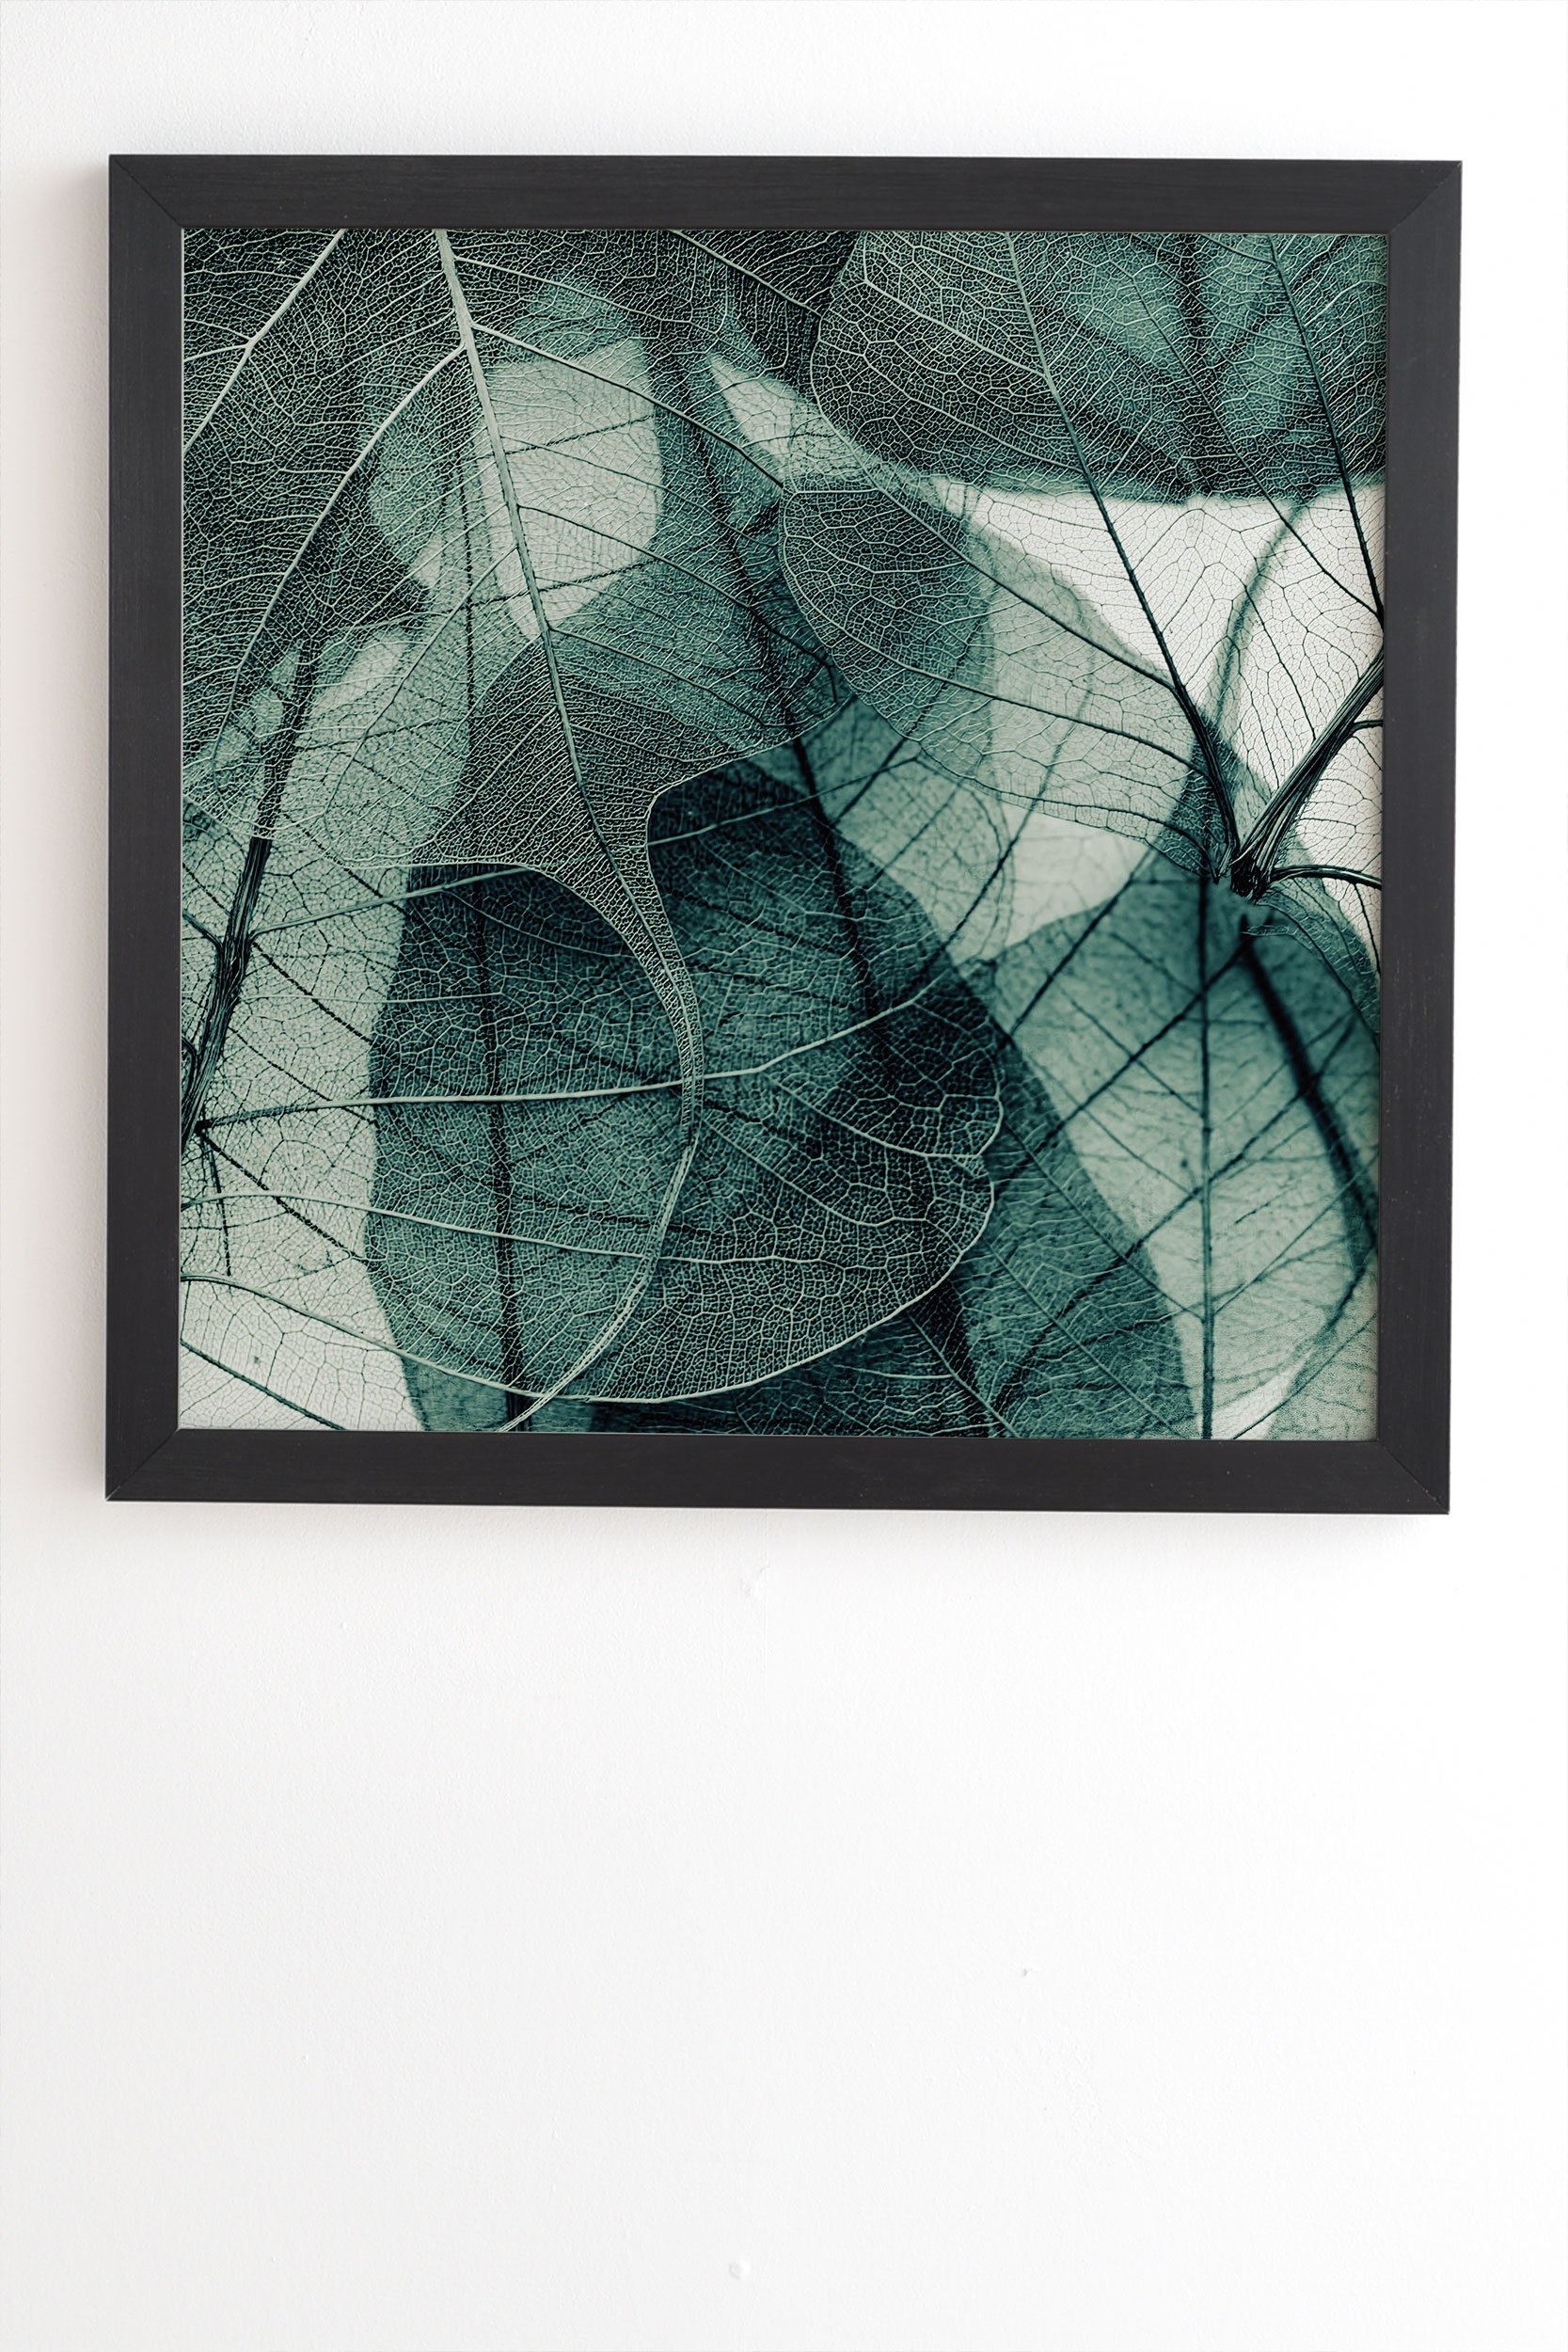 Ingrid Beddoes Olive Green Black Framed Wall Art - 11" x 13" - Image 1